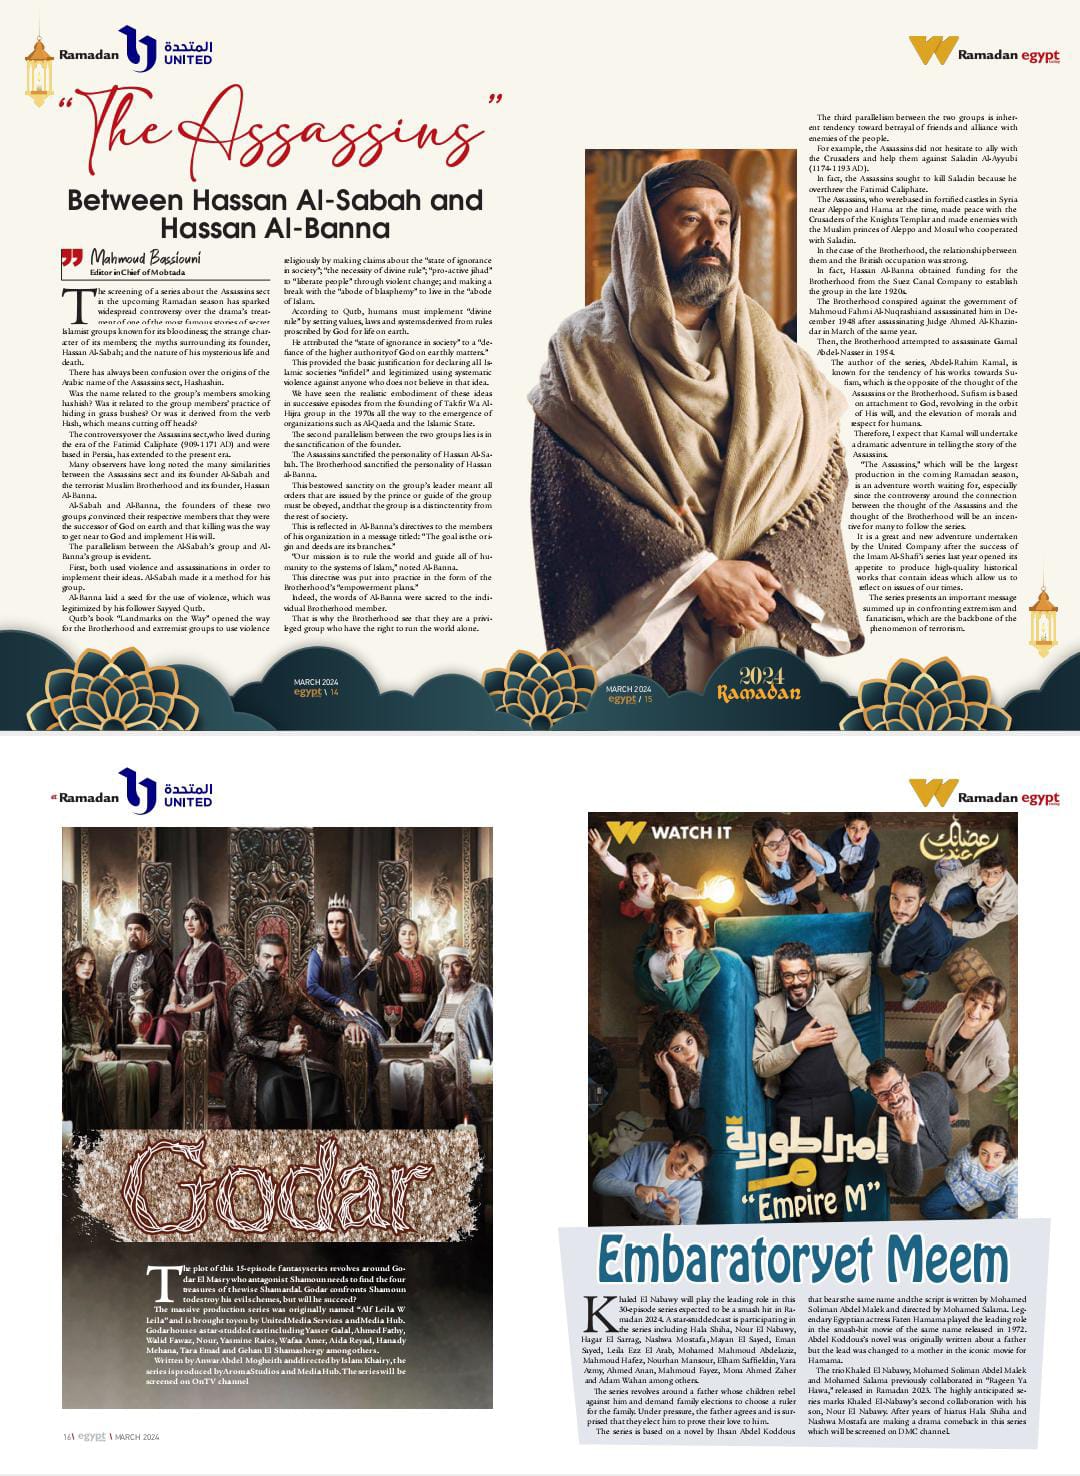  مجلة Egypt Today تقدم عددا خاصا عن دراما المتحدة في رمضان 